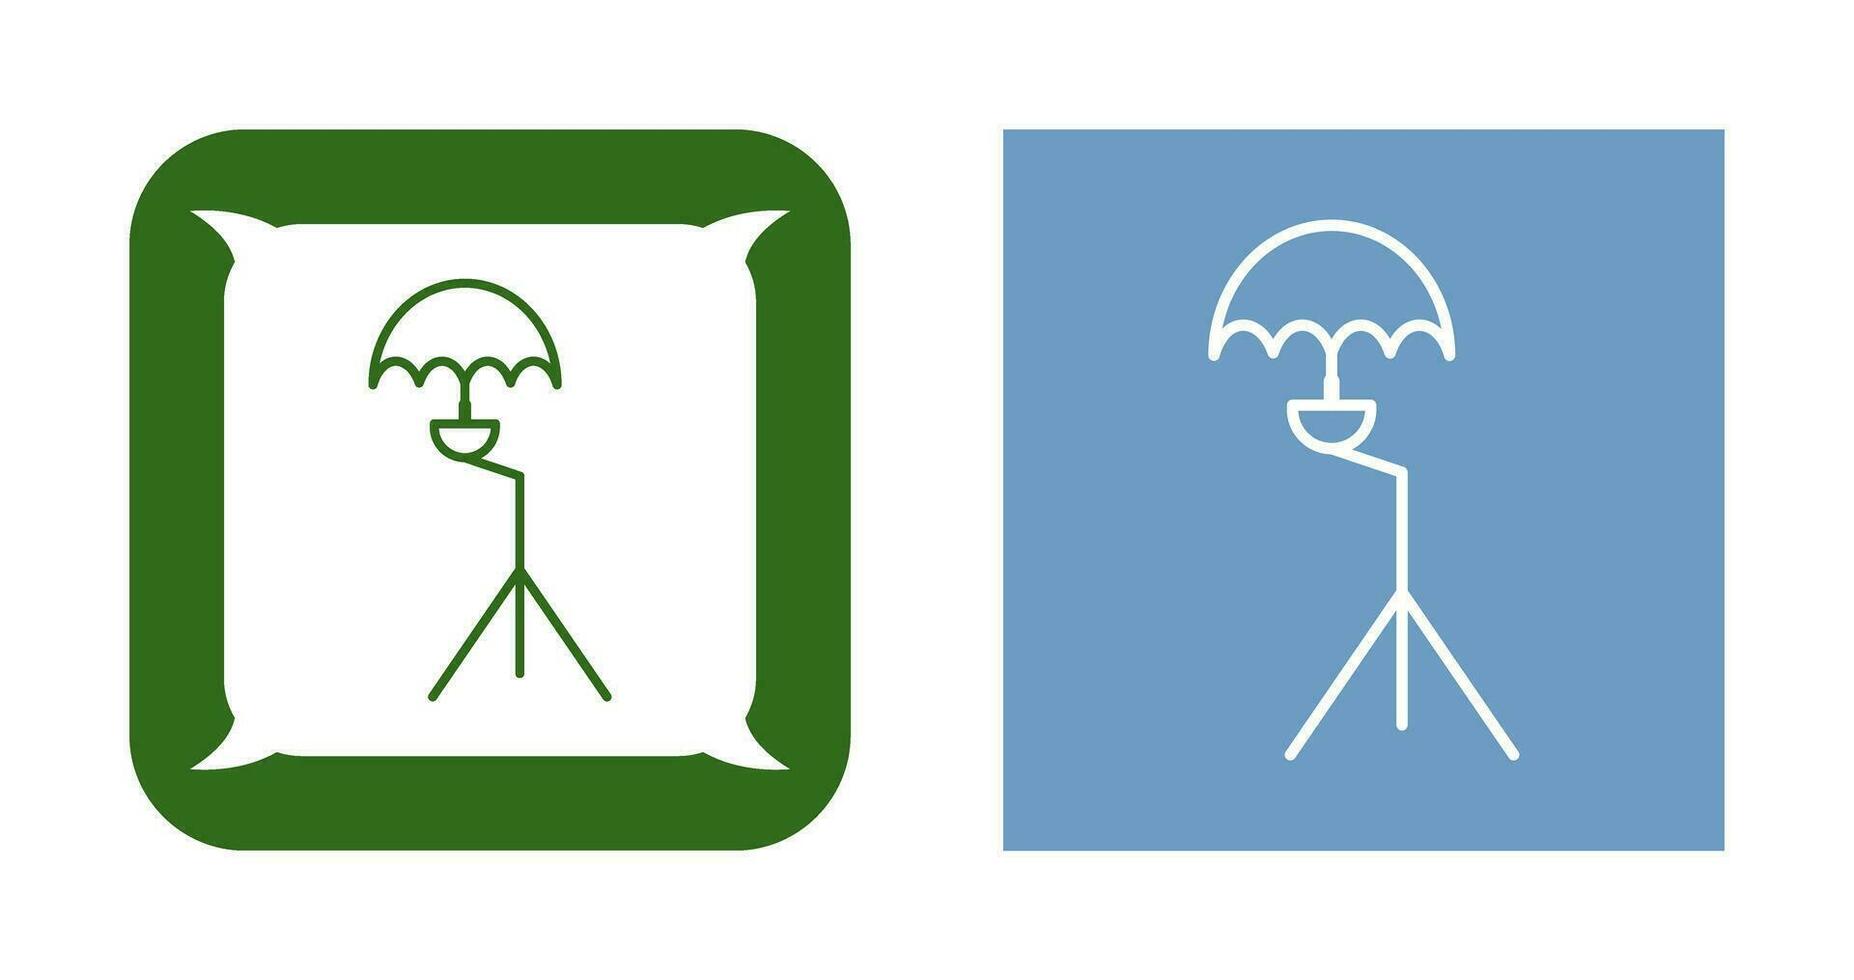 icono de vector de soporte de paraguas único